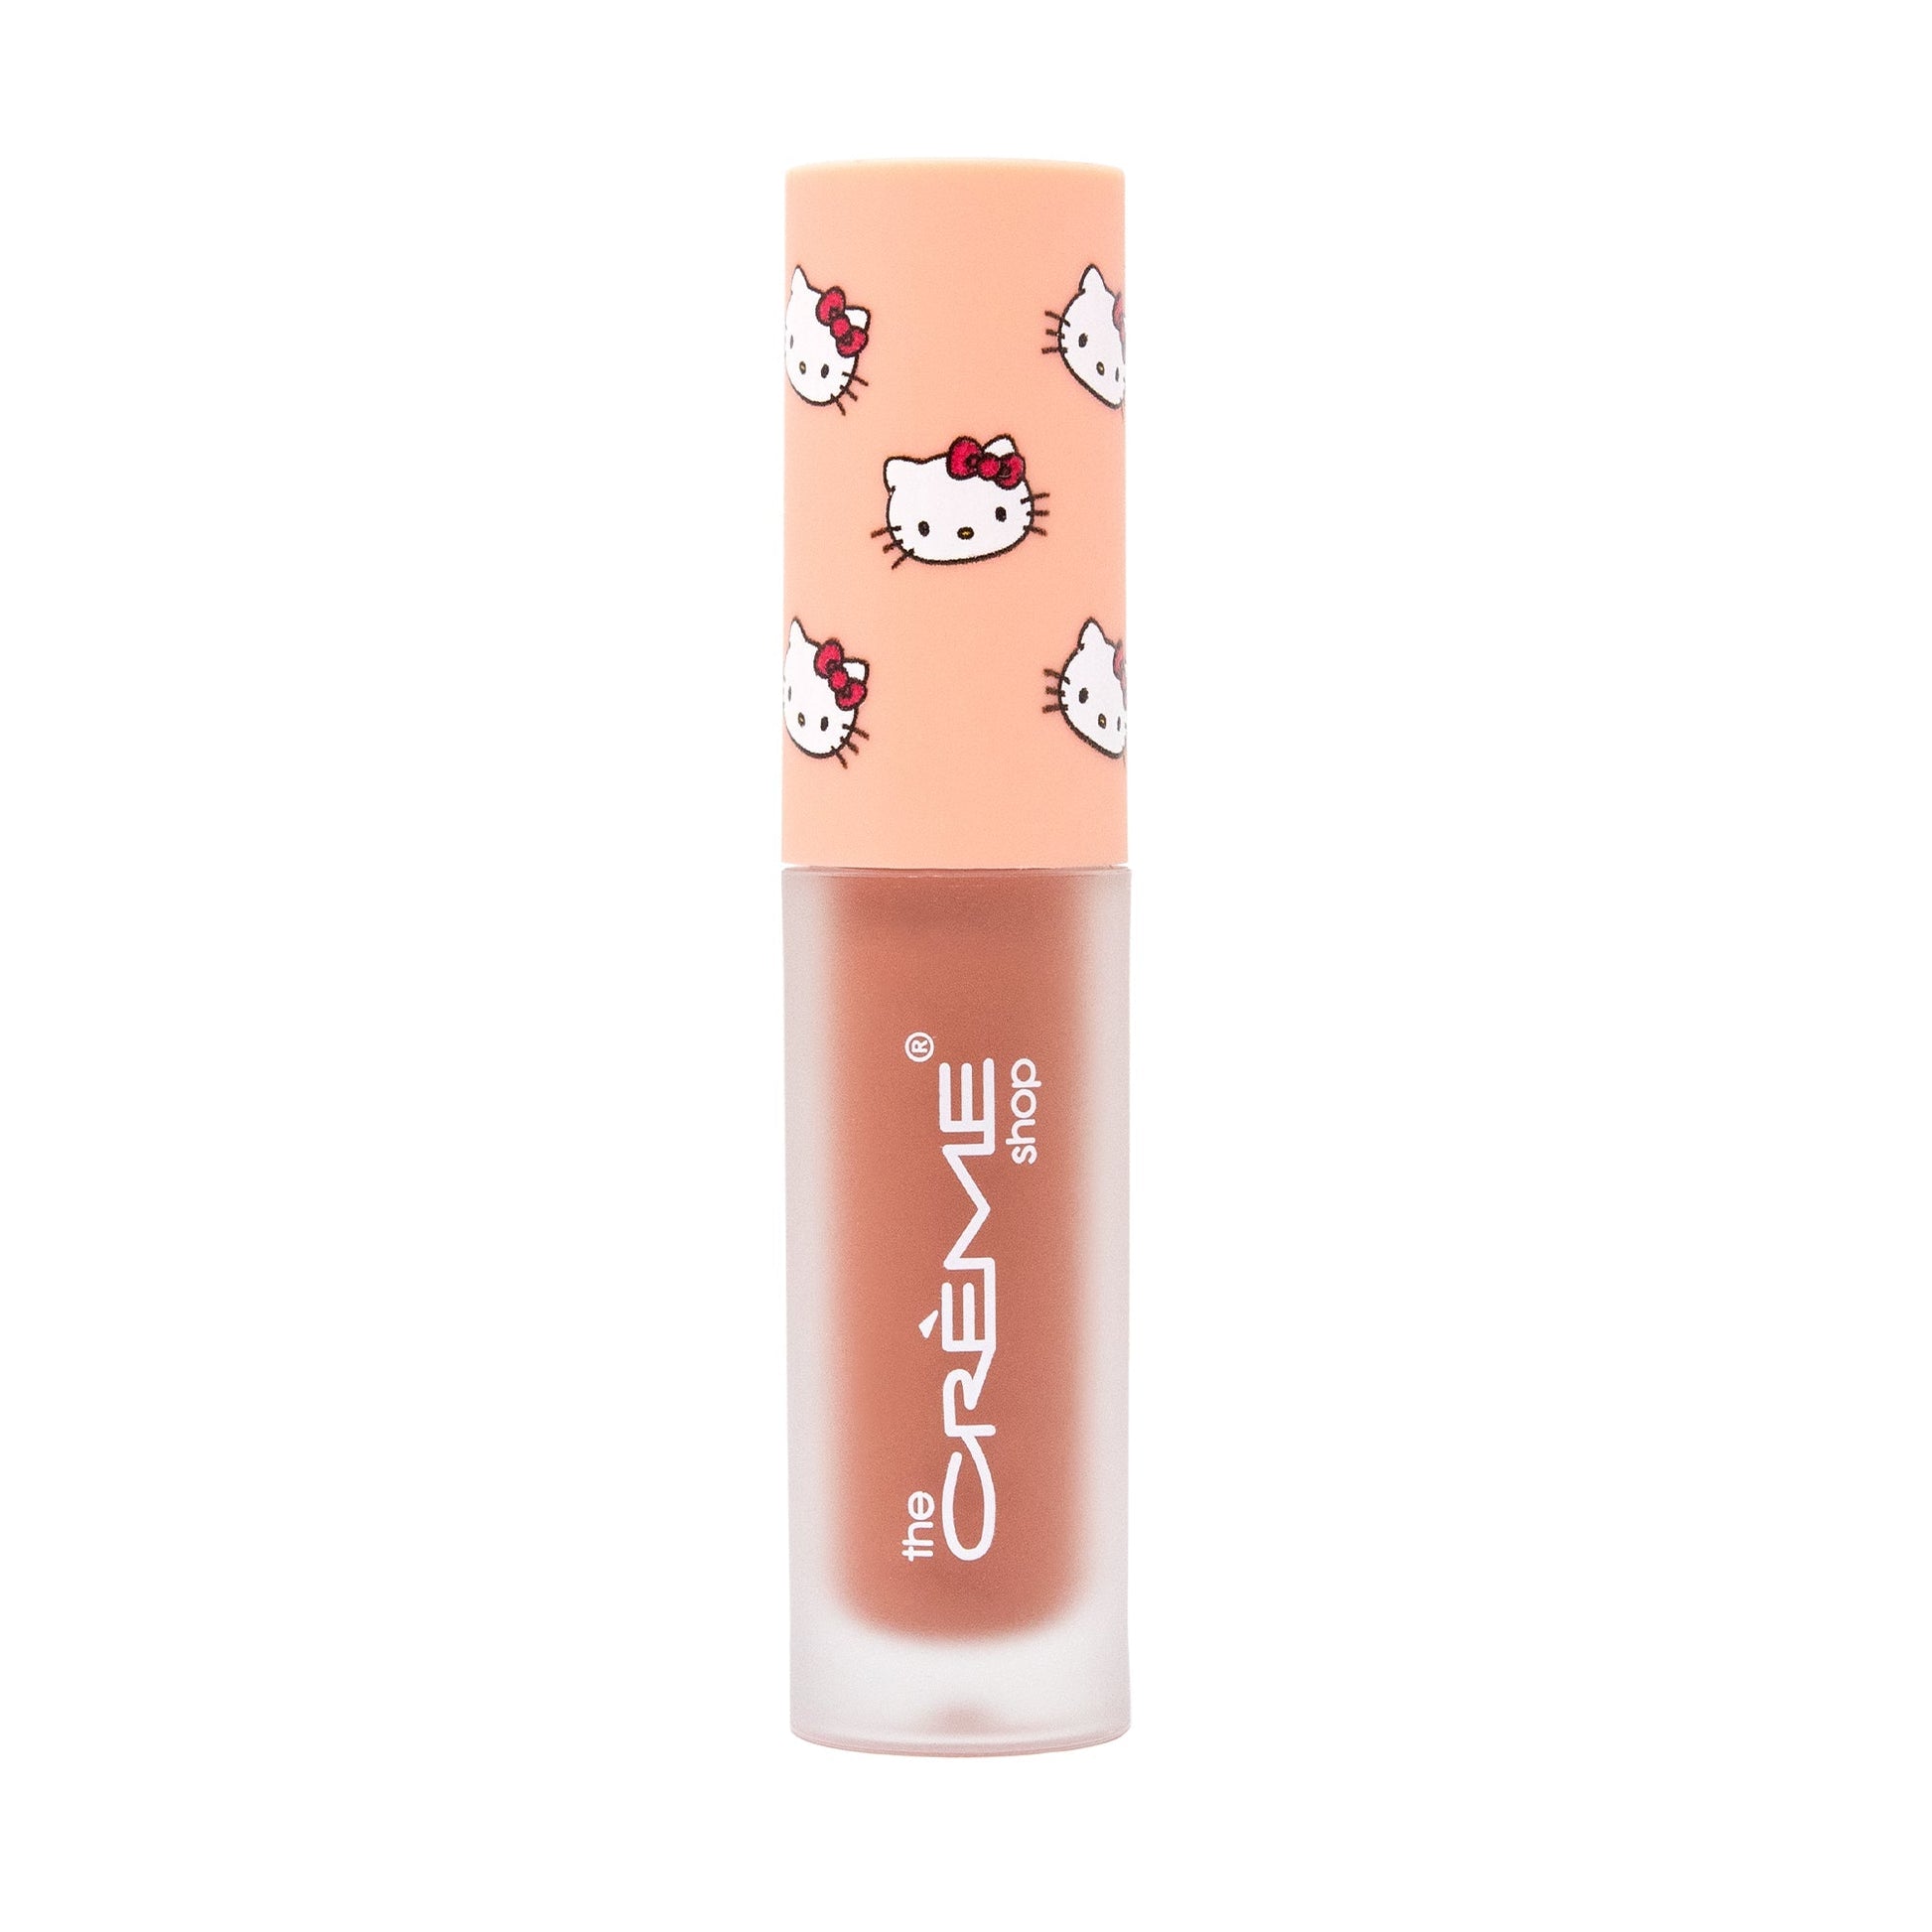 The Crème Shop x Hello Kitty Kawaii Kiss Moisturizing Lip Oil - Peach Flavored Lip Oil The Crème Shop x Sanrio 